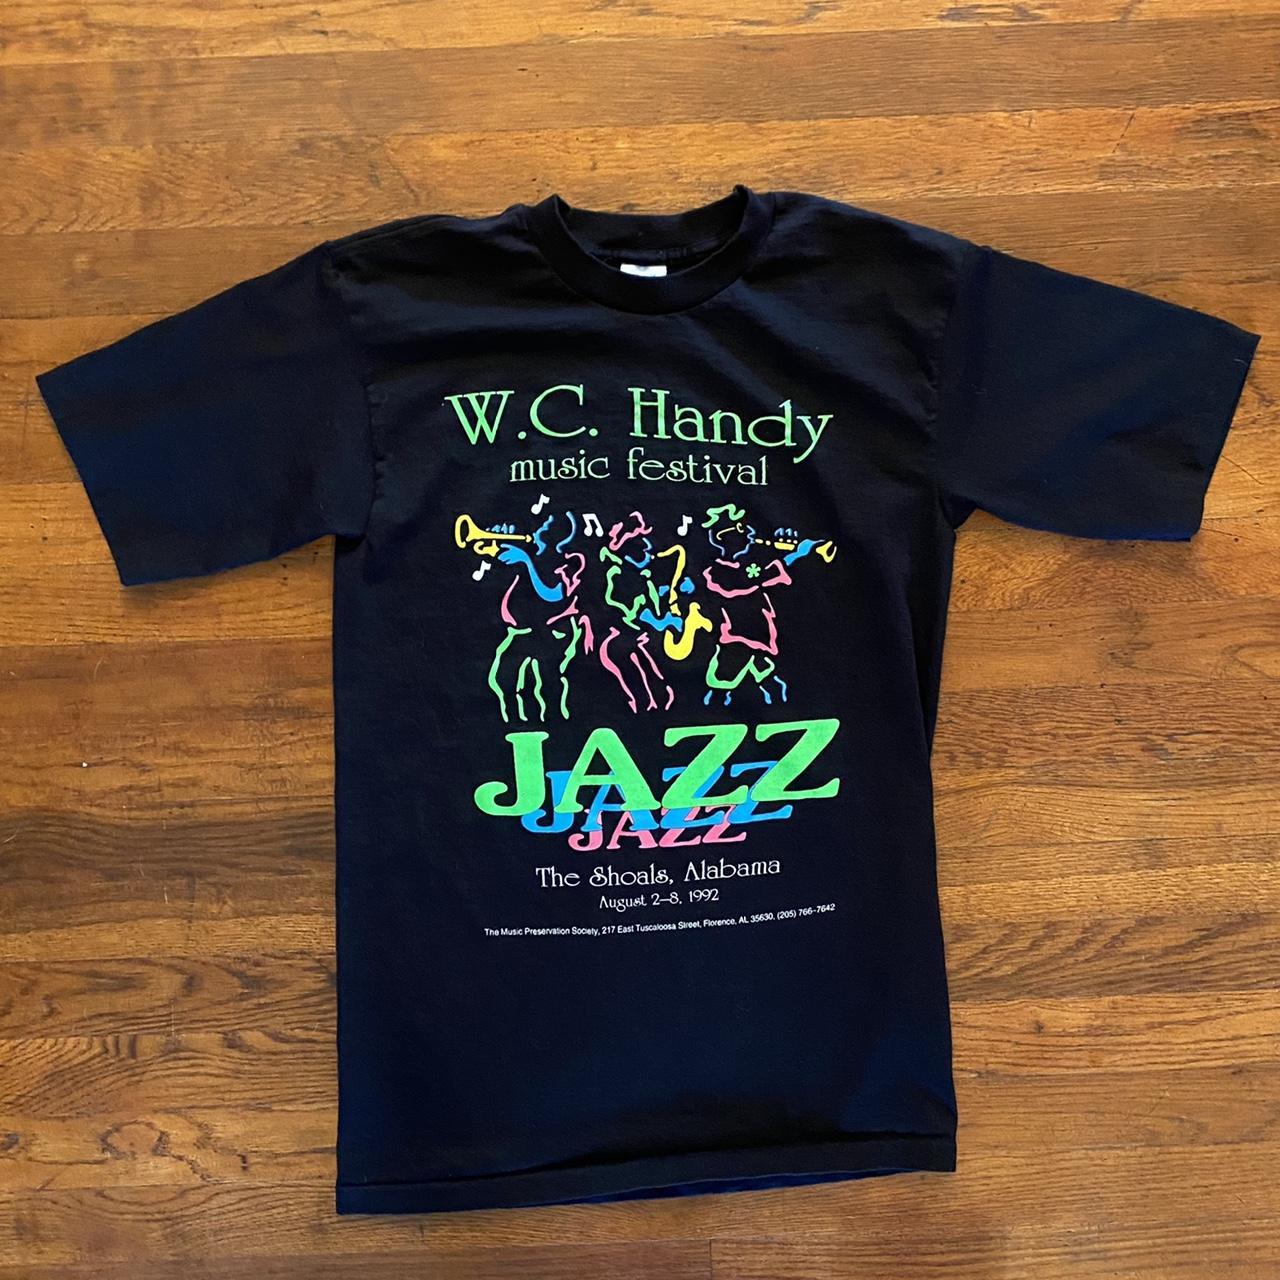 Vintage Jazz Shirt. NWOT!! Dope Salem T-shirt from... - Depop